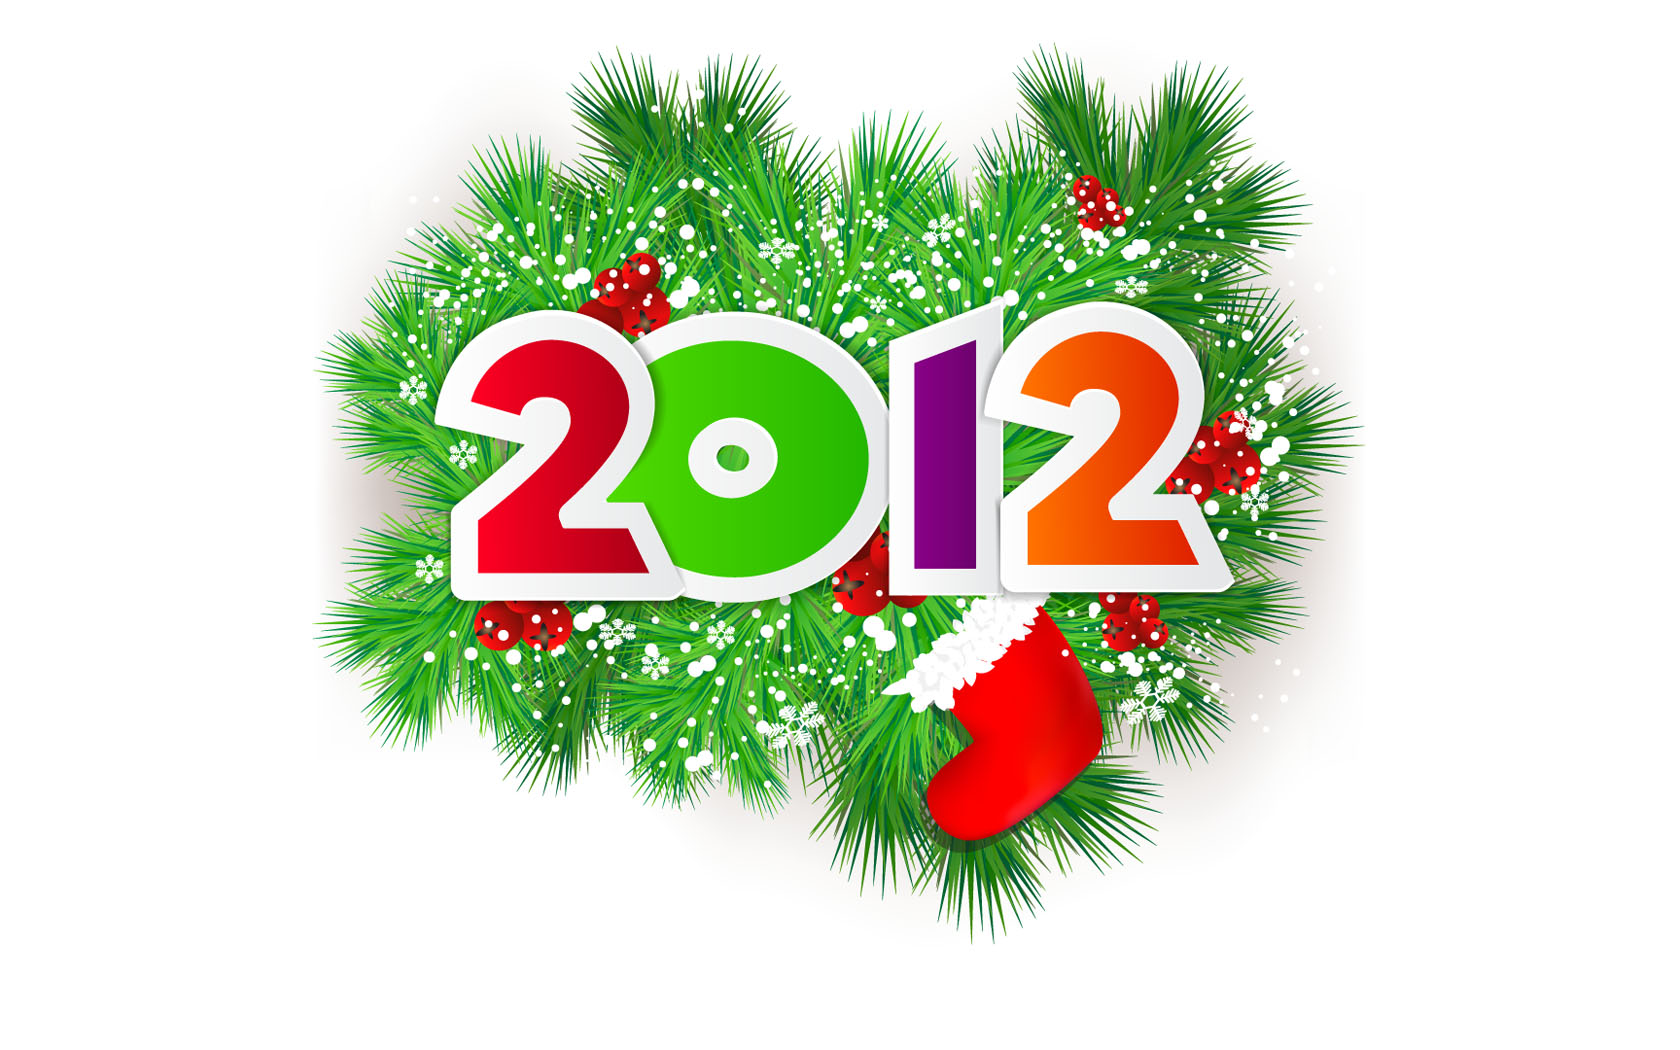 2012 Exquisite Christmas Vector Desktop Wallpaper